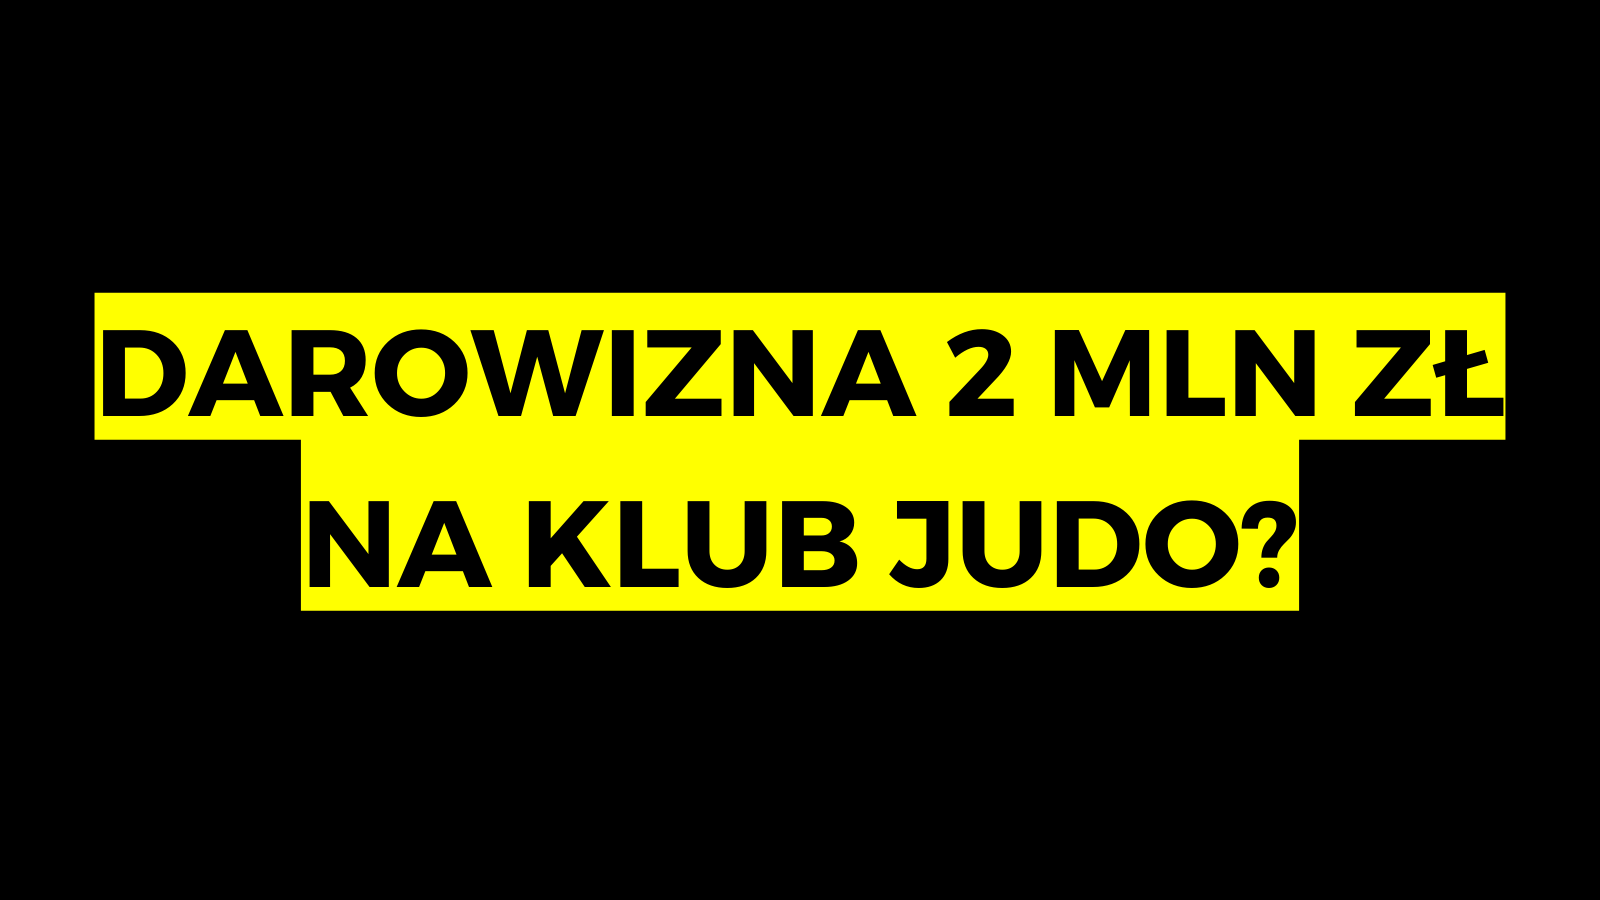 #20: Czy da się charytatywnie zebrać 2 000 000 zł na klub judo? (analiza i wnioski)